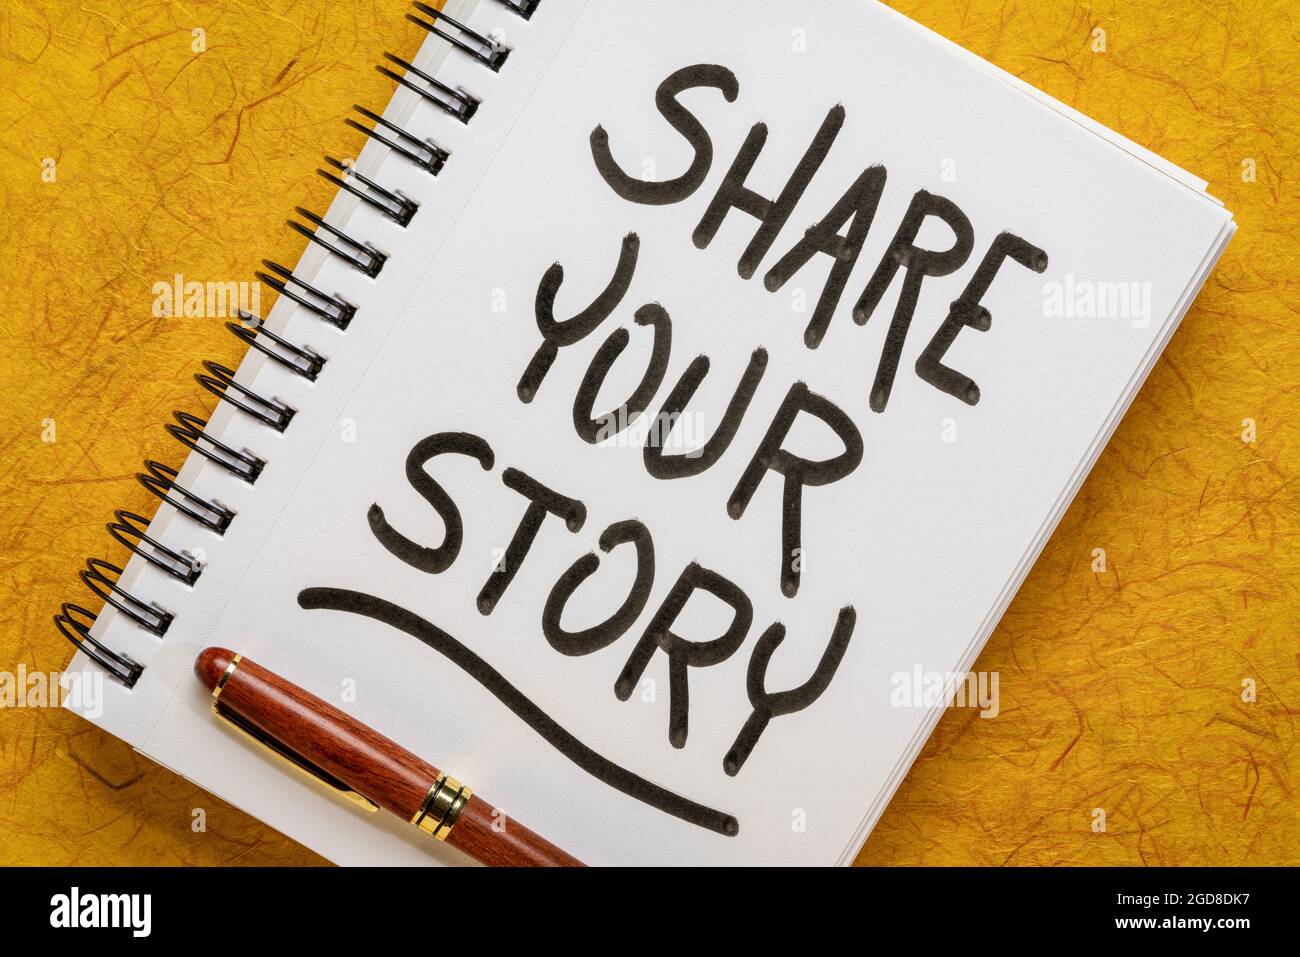 condividete la vostra storia - grafia motivazionale in un notebook a spirale, condividendo il concetto di esperienza e saggezza Foto Stock